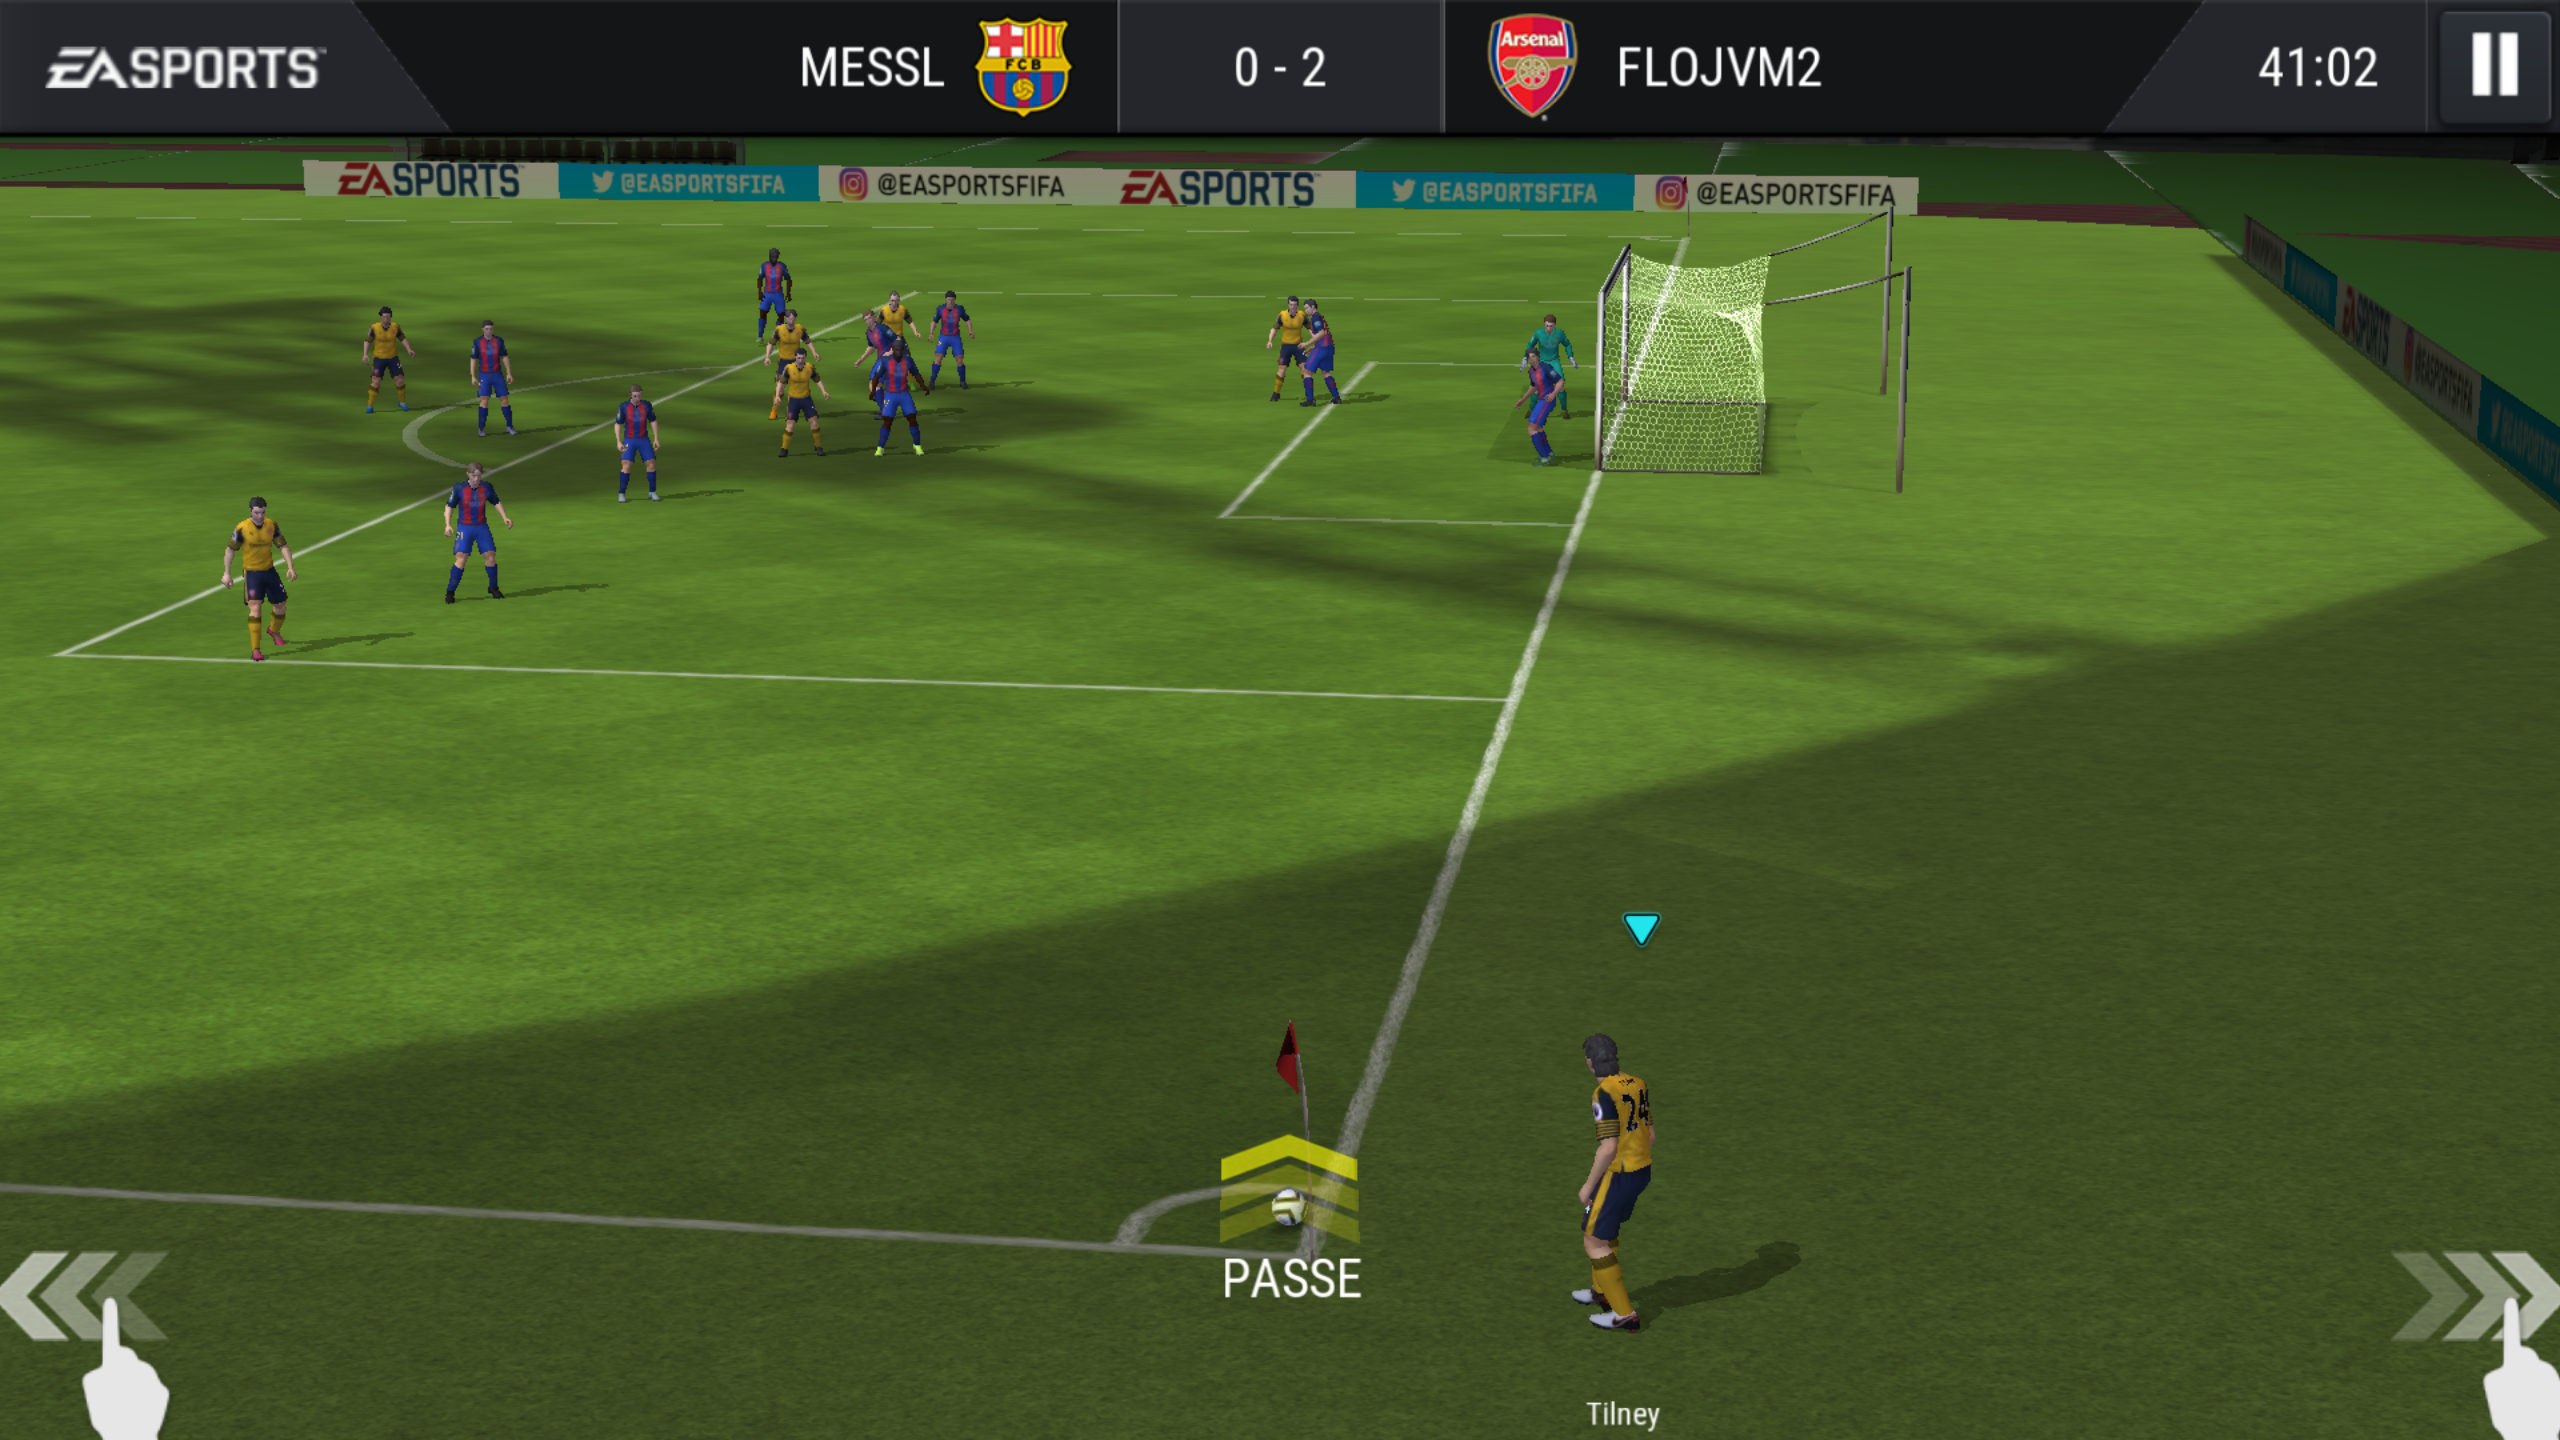 fifa mobile soccer plan